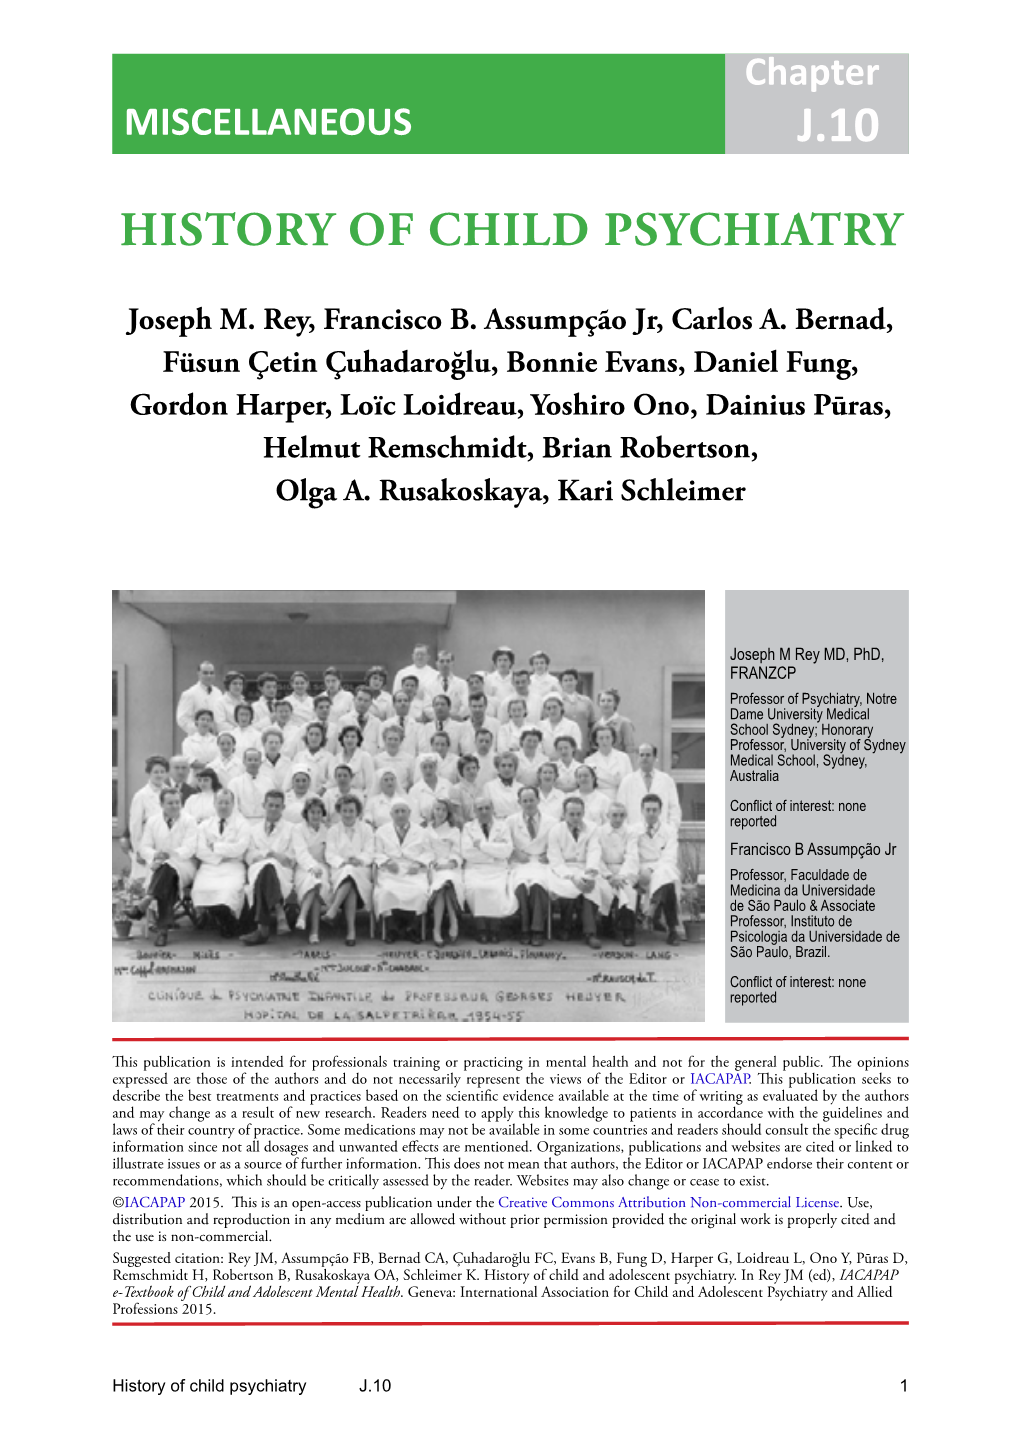 History of Child Psychiatry